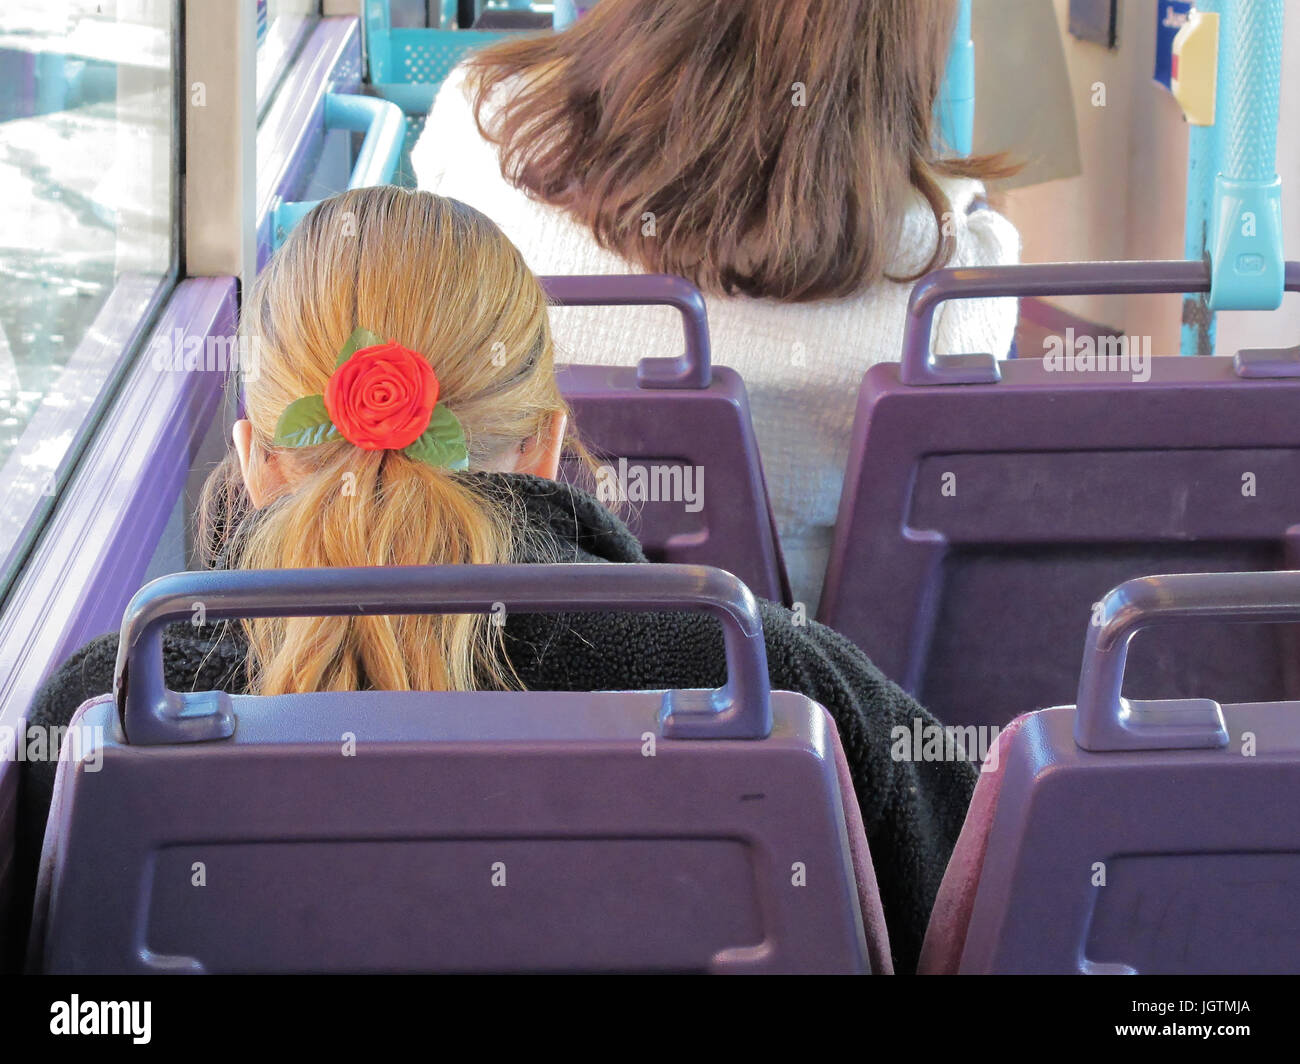 L'arrière de la tête avec un bandeau rose cheveux blonds fille femme sièges de transport public bus vide Banque D'Images